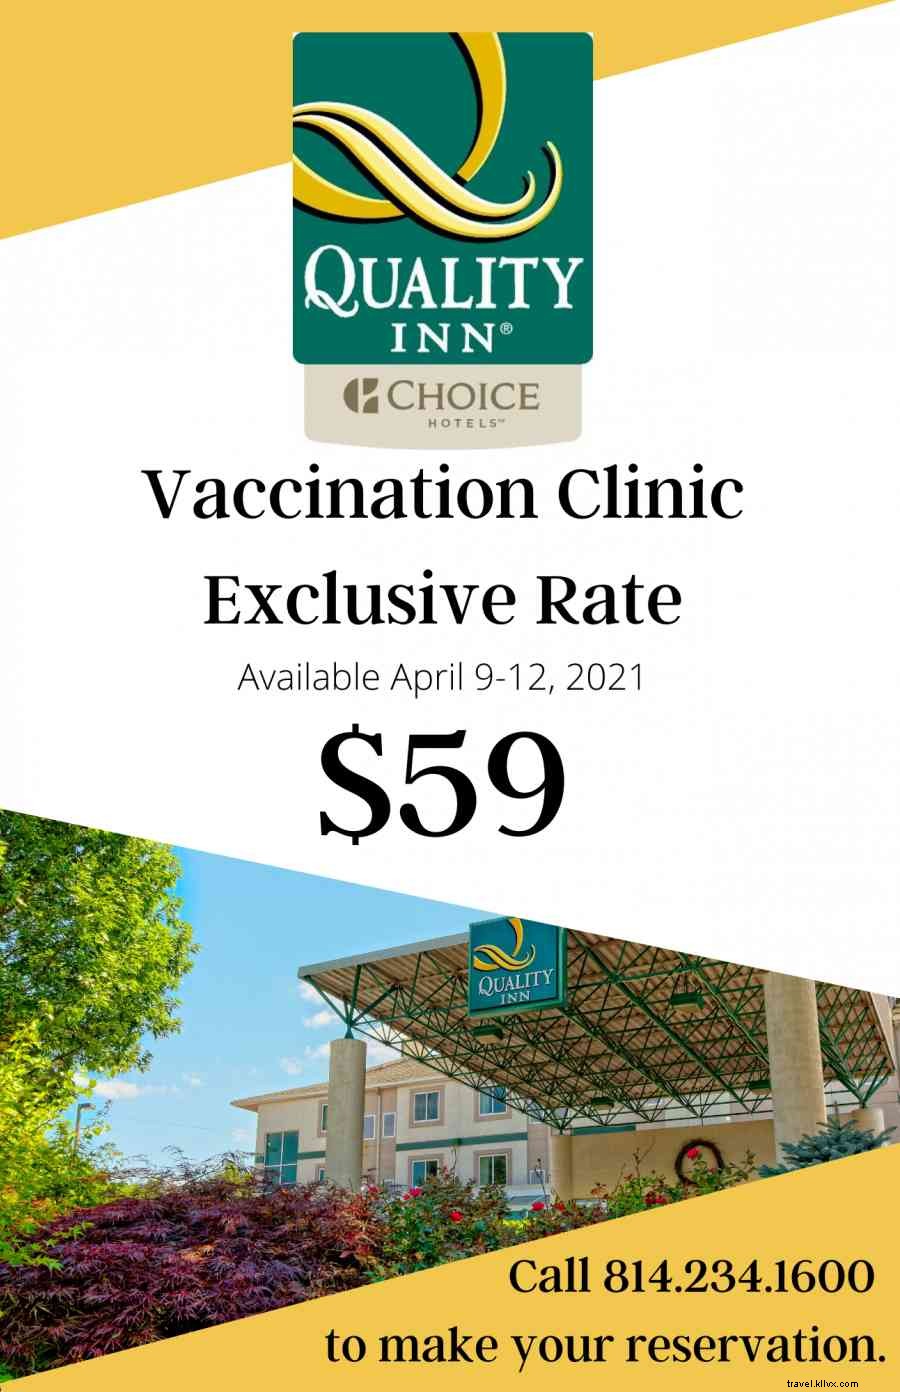 n Happy Valley para sua vacina COVID? 